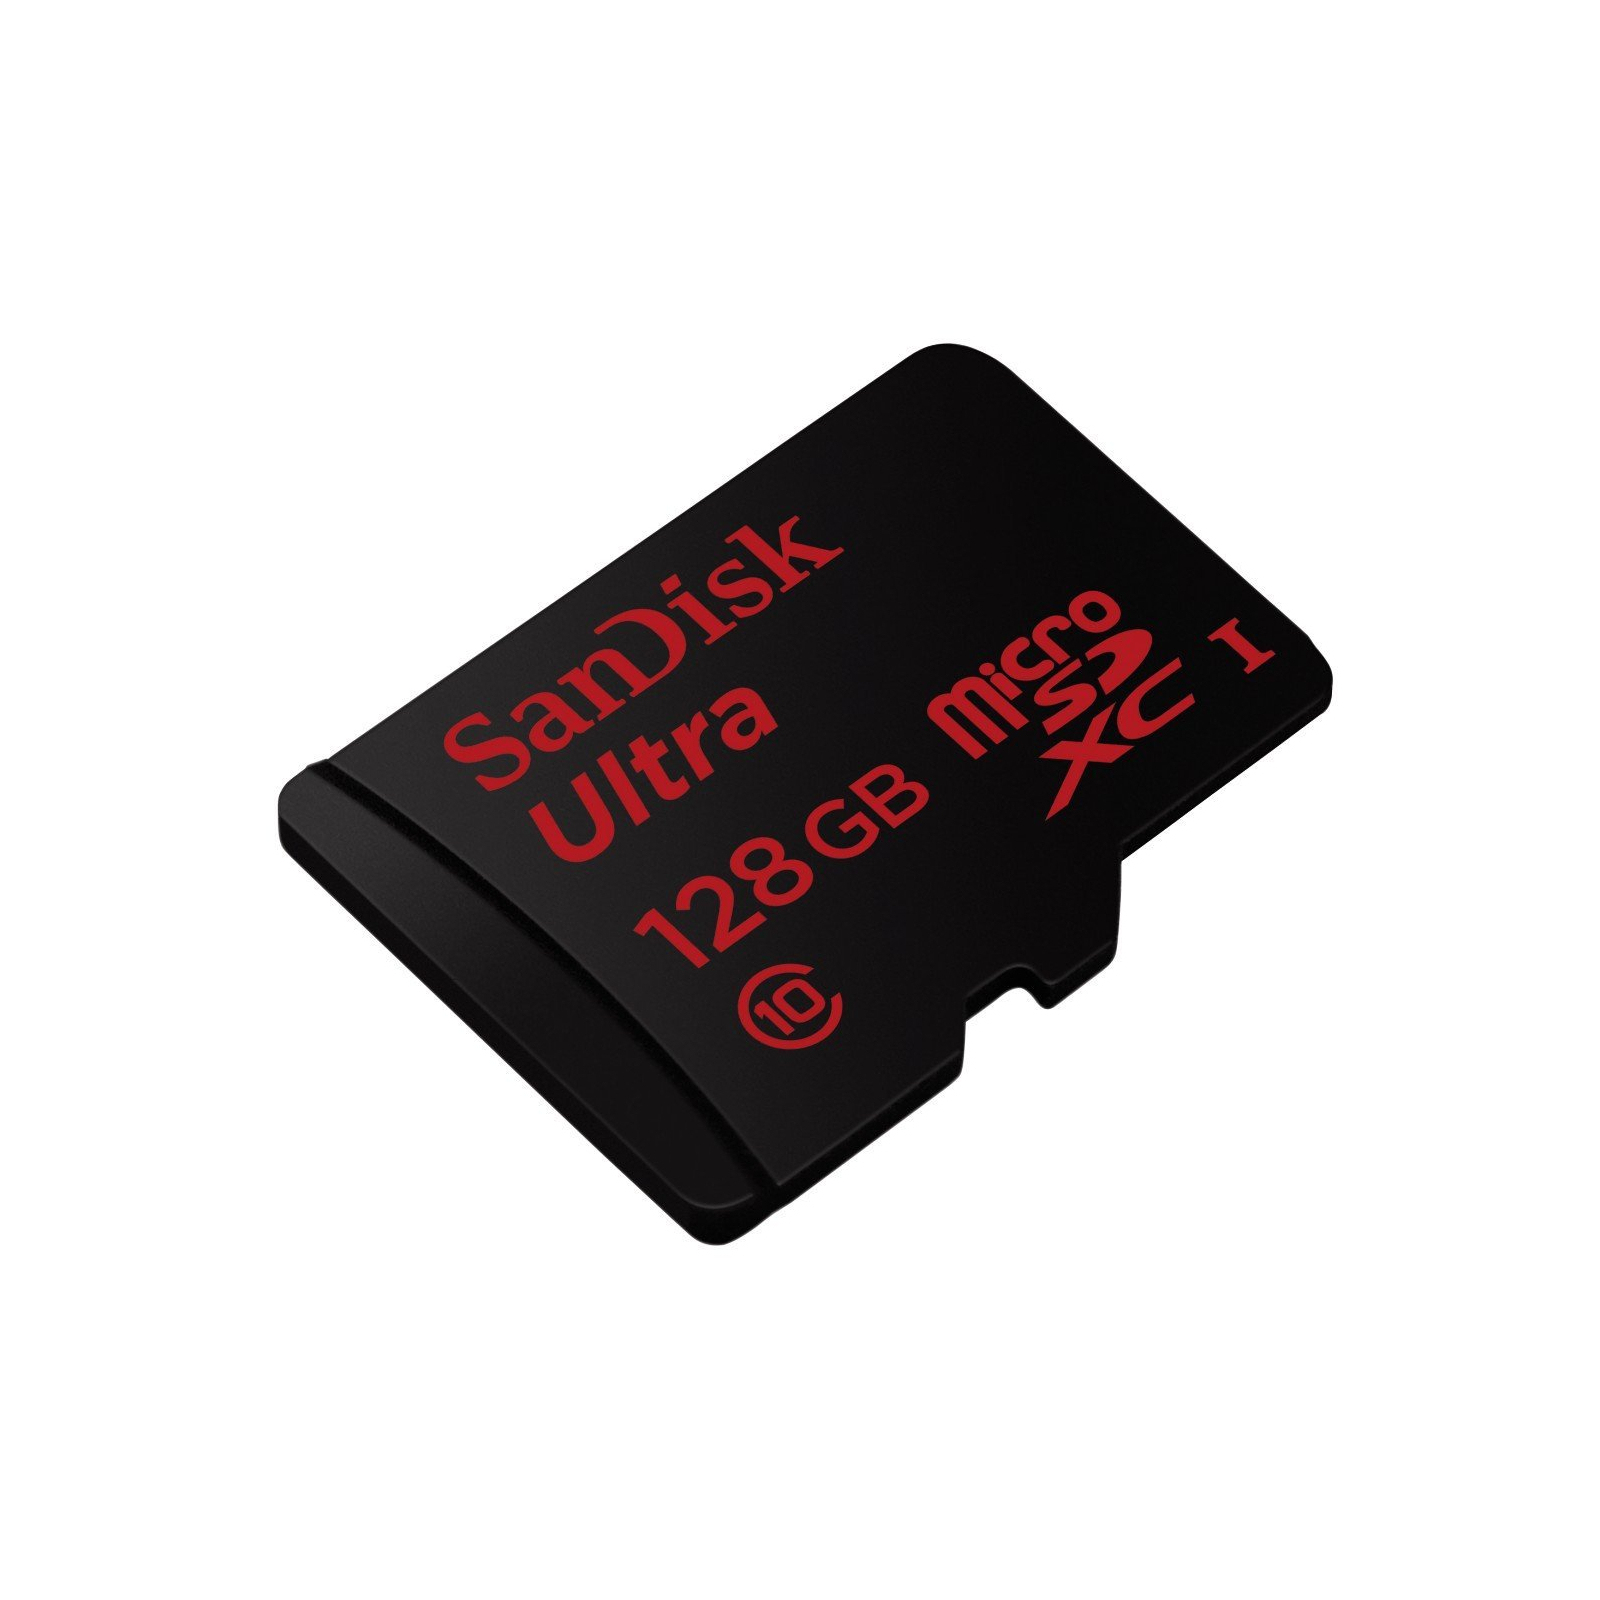 Карта памяти SanDisk Ultra 128GB microSDXC Class 10 UHS-I 48MB/s Android (SDSDQUAN-128G-G4A) изображение 3